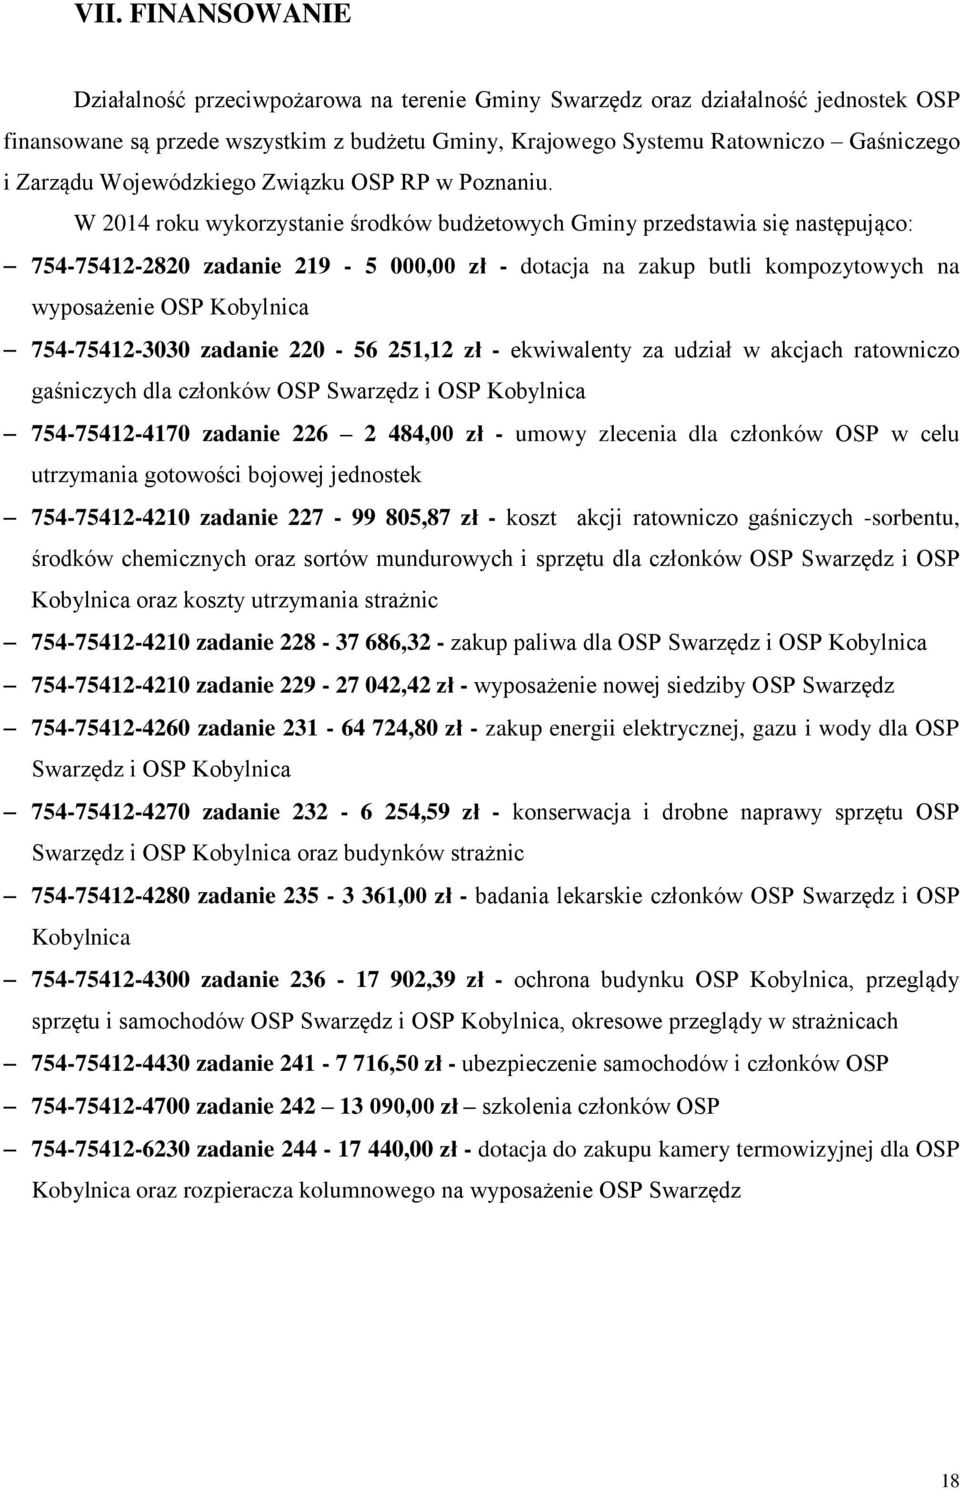 W 2014 roku wykorzystanie środków budżetowych Gminy przedstawia się następująco: 754-75412-2820 zadanie 219-5 000,00 zł - dotacja na zakup butli kompozytowych na wyposażenie OSP Kobylnica